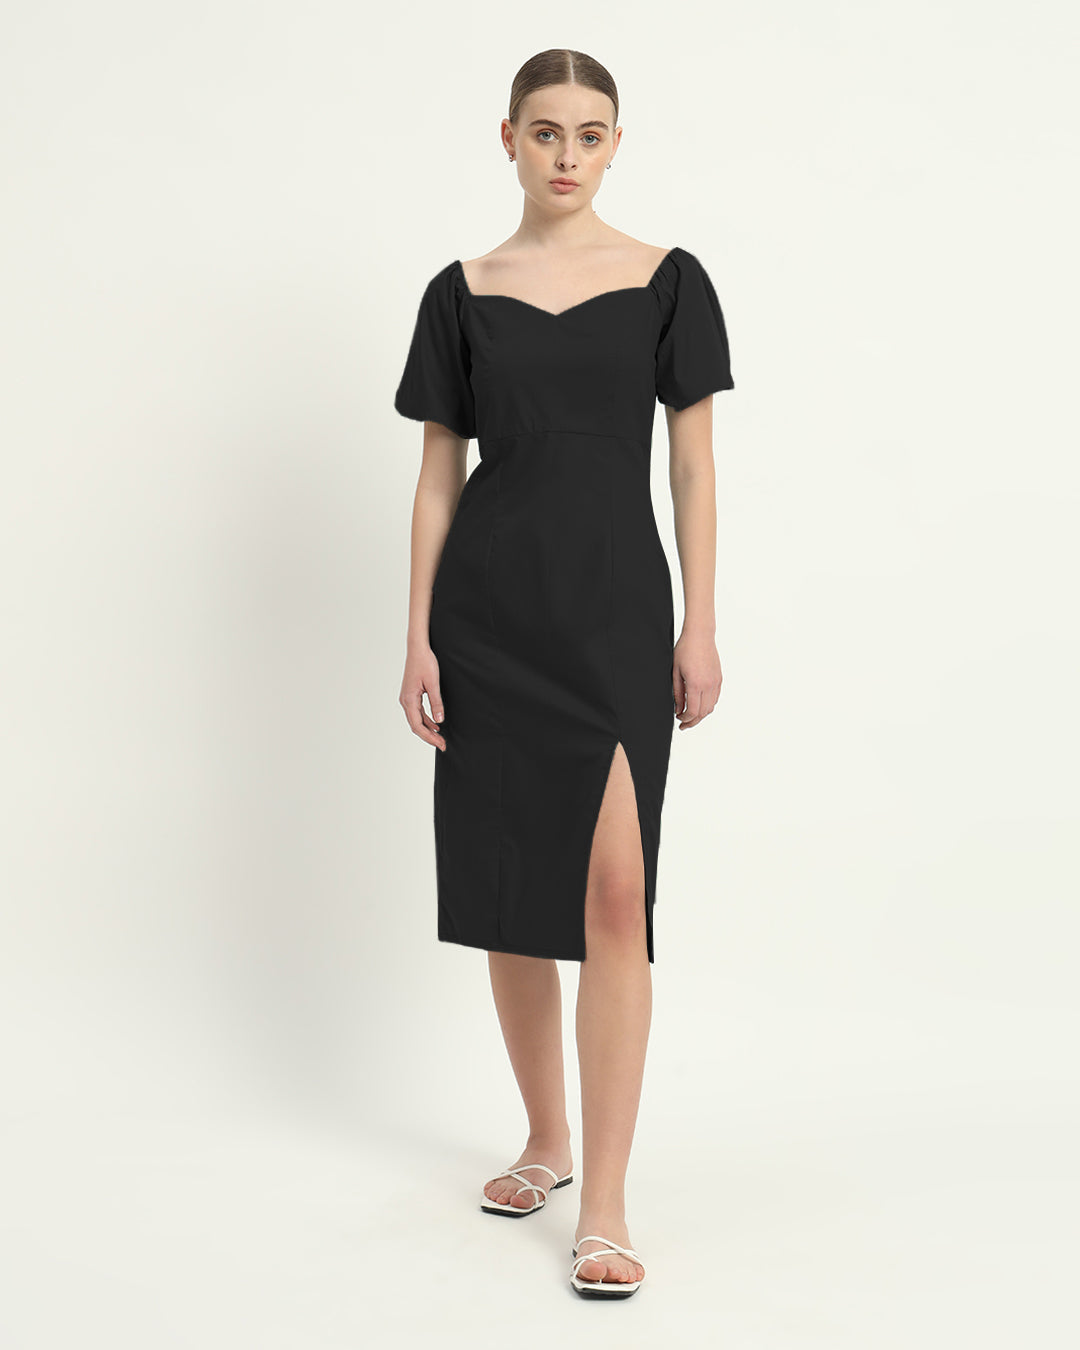 The Erwin Noir Cotton Dress